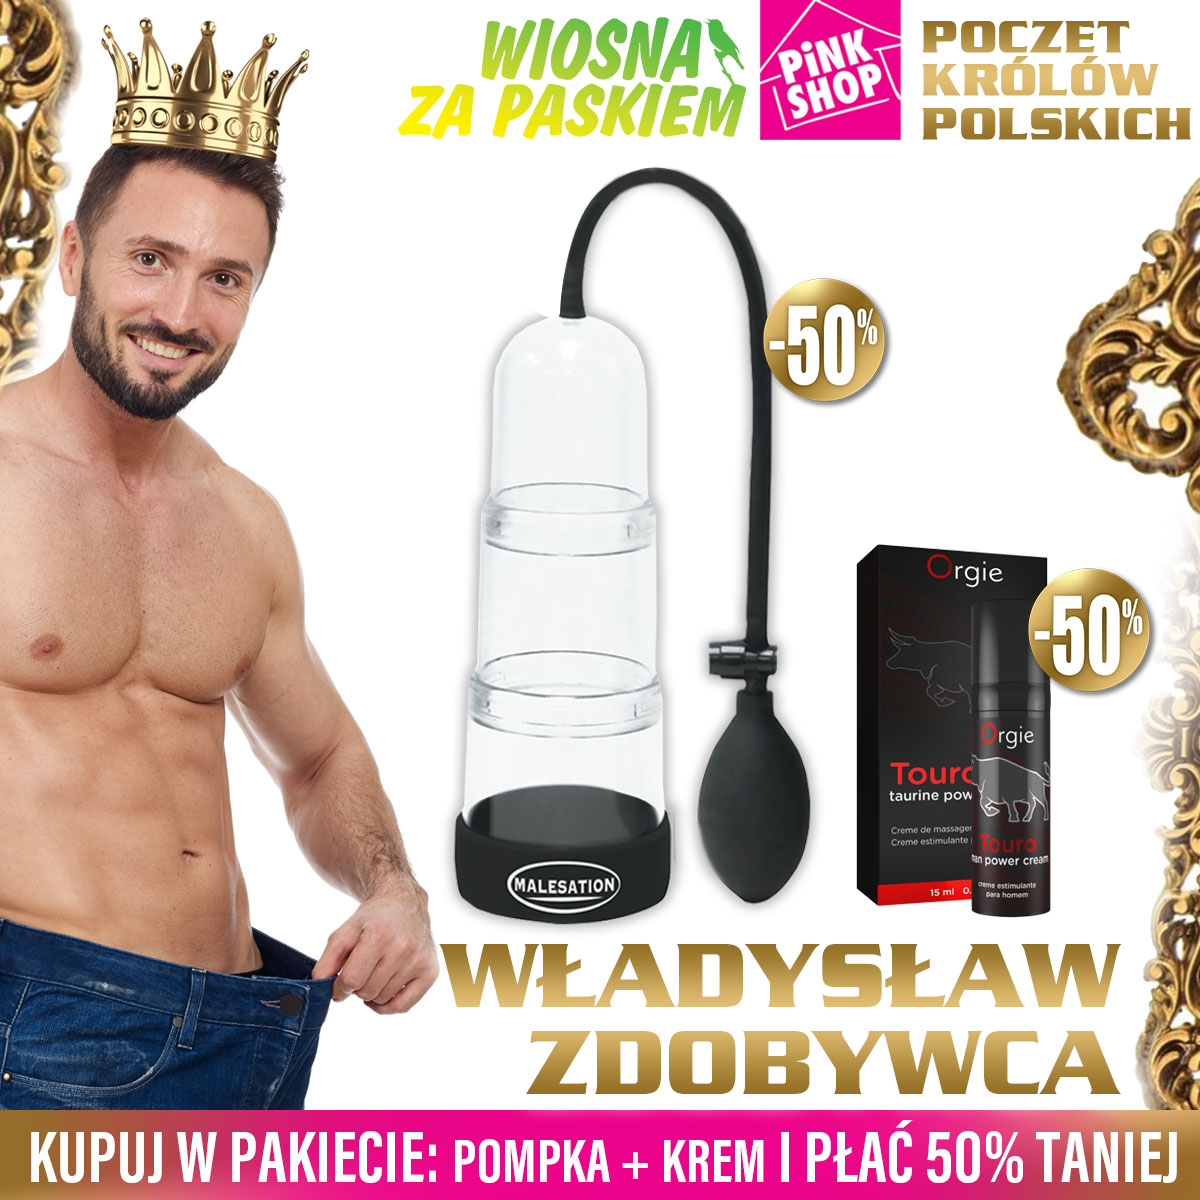 Poczet Królów Polskich - Władysław Zdobywca odc. 3